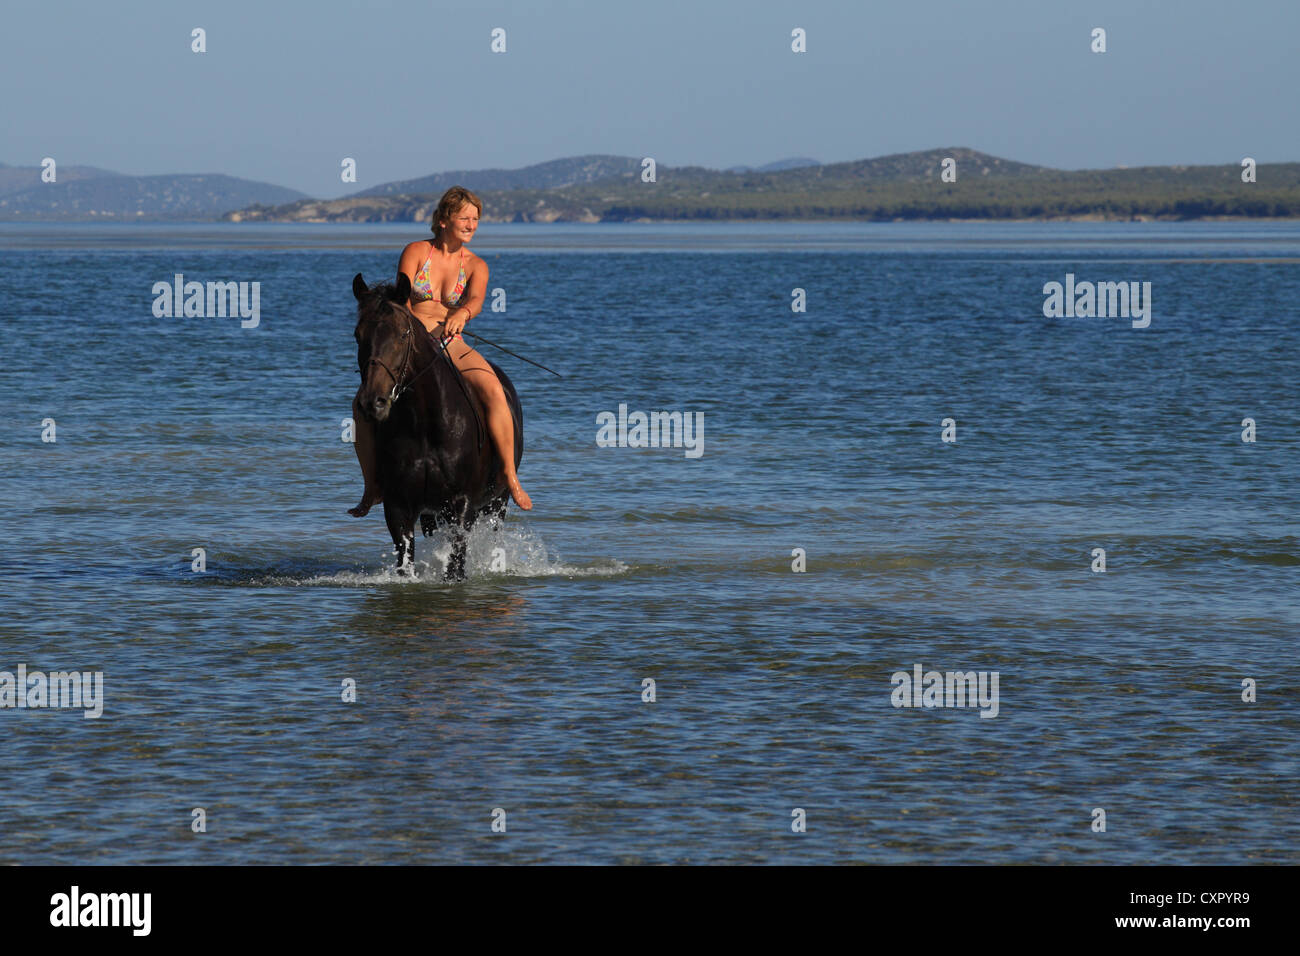 Jeune femme montant un cheval dans les eaux de Vransko jezero (lac de Vrana) près de Pakostane, Croatie. Banque D'Images